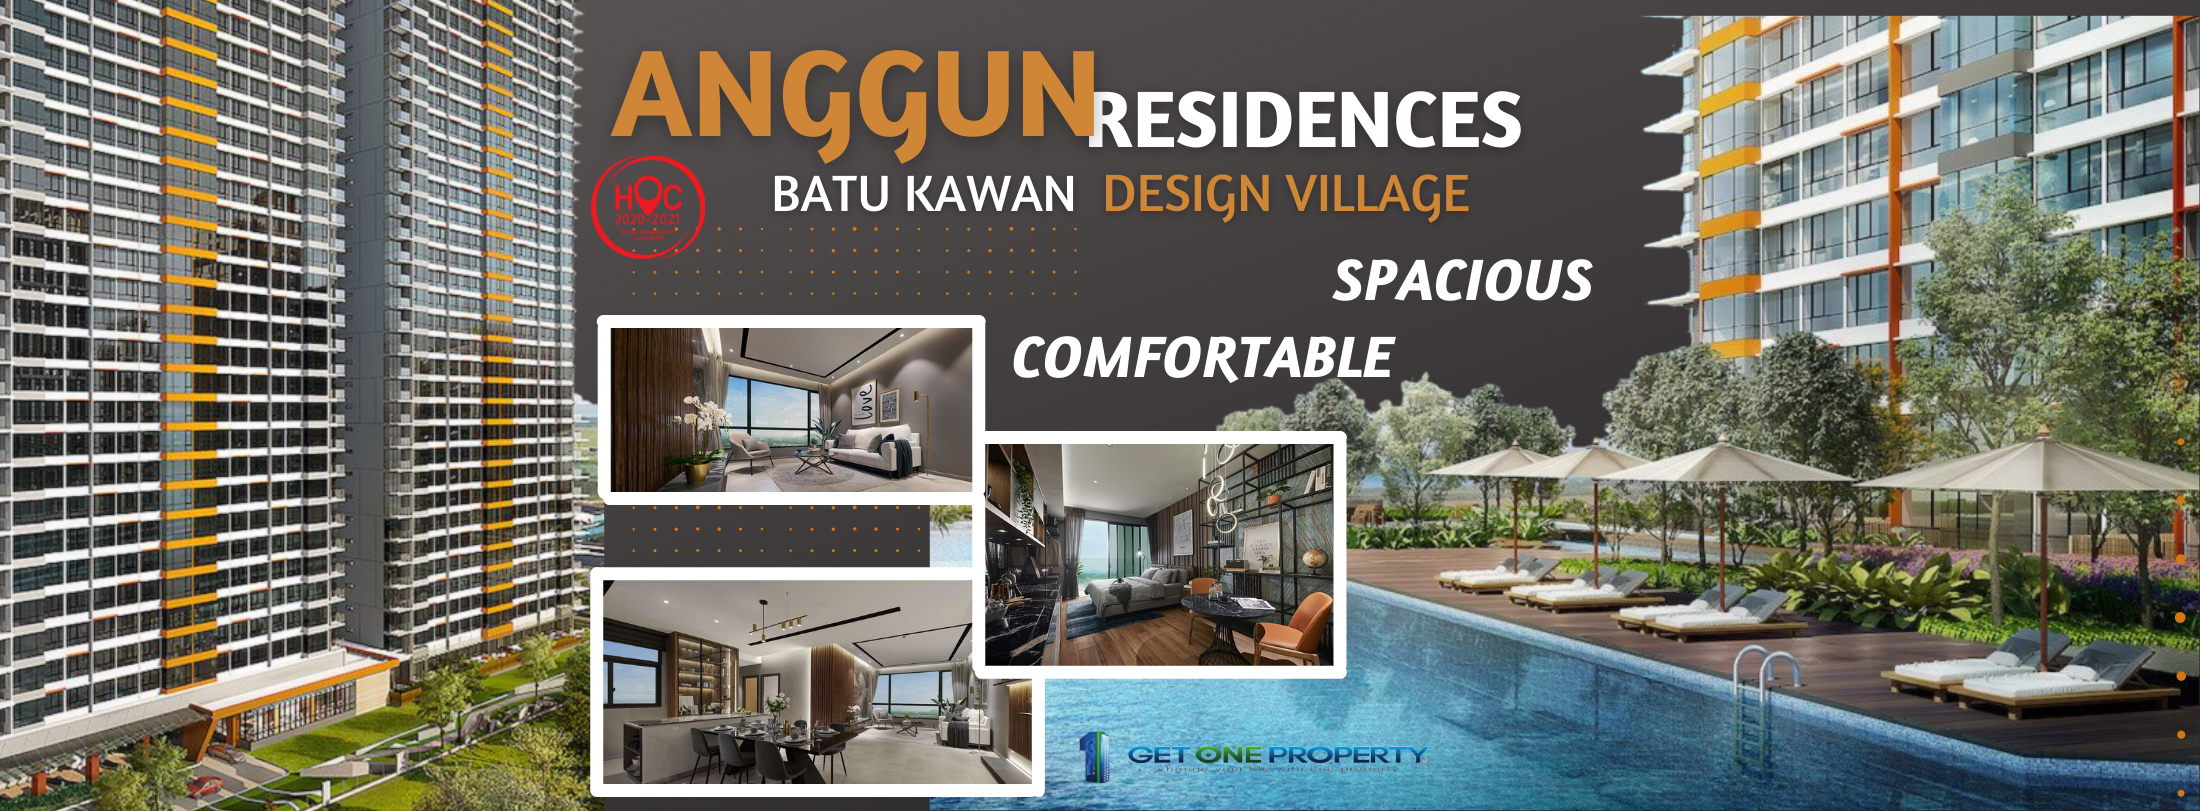 Batu anggun kawan residence Anggun Residences